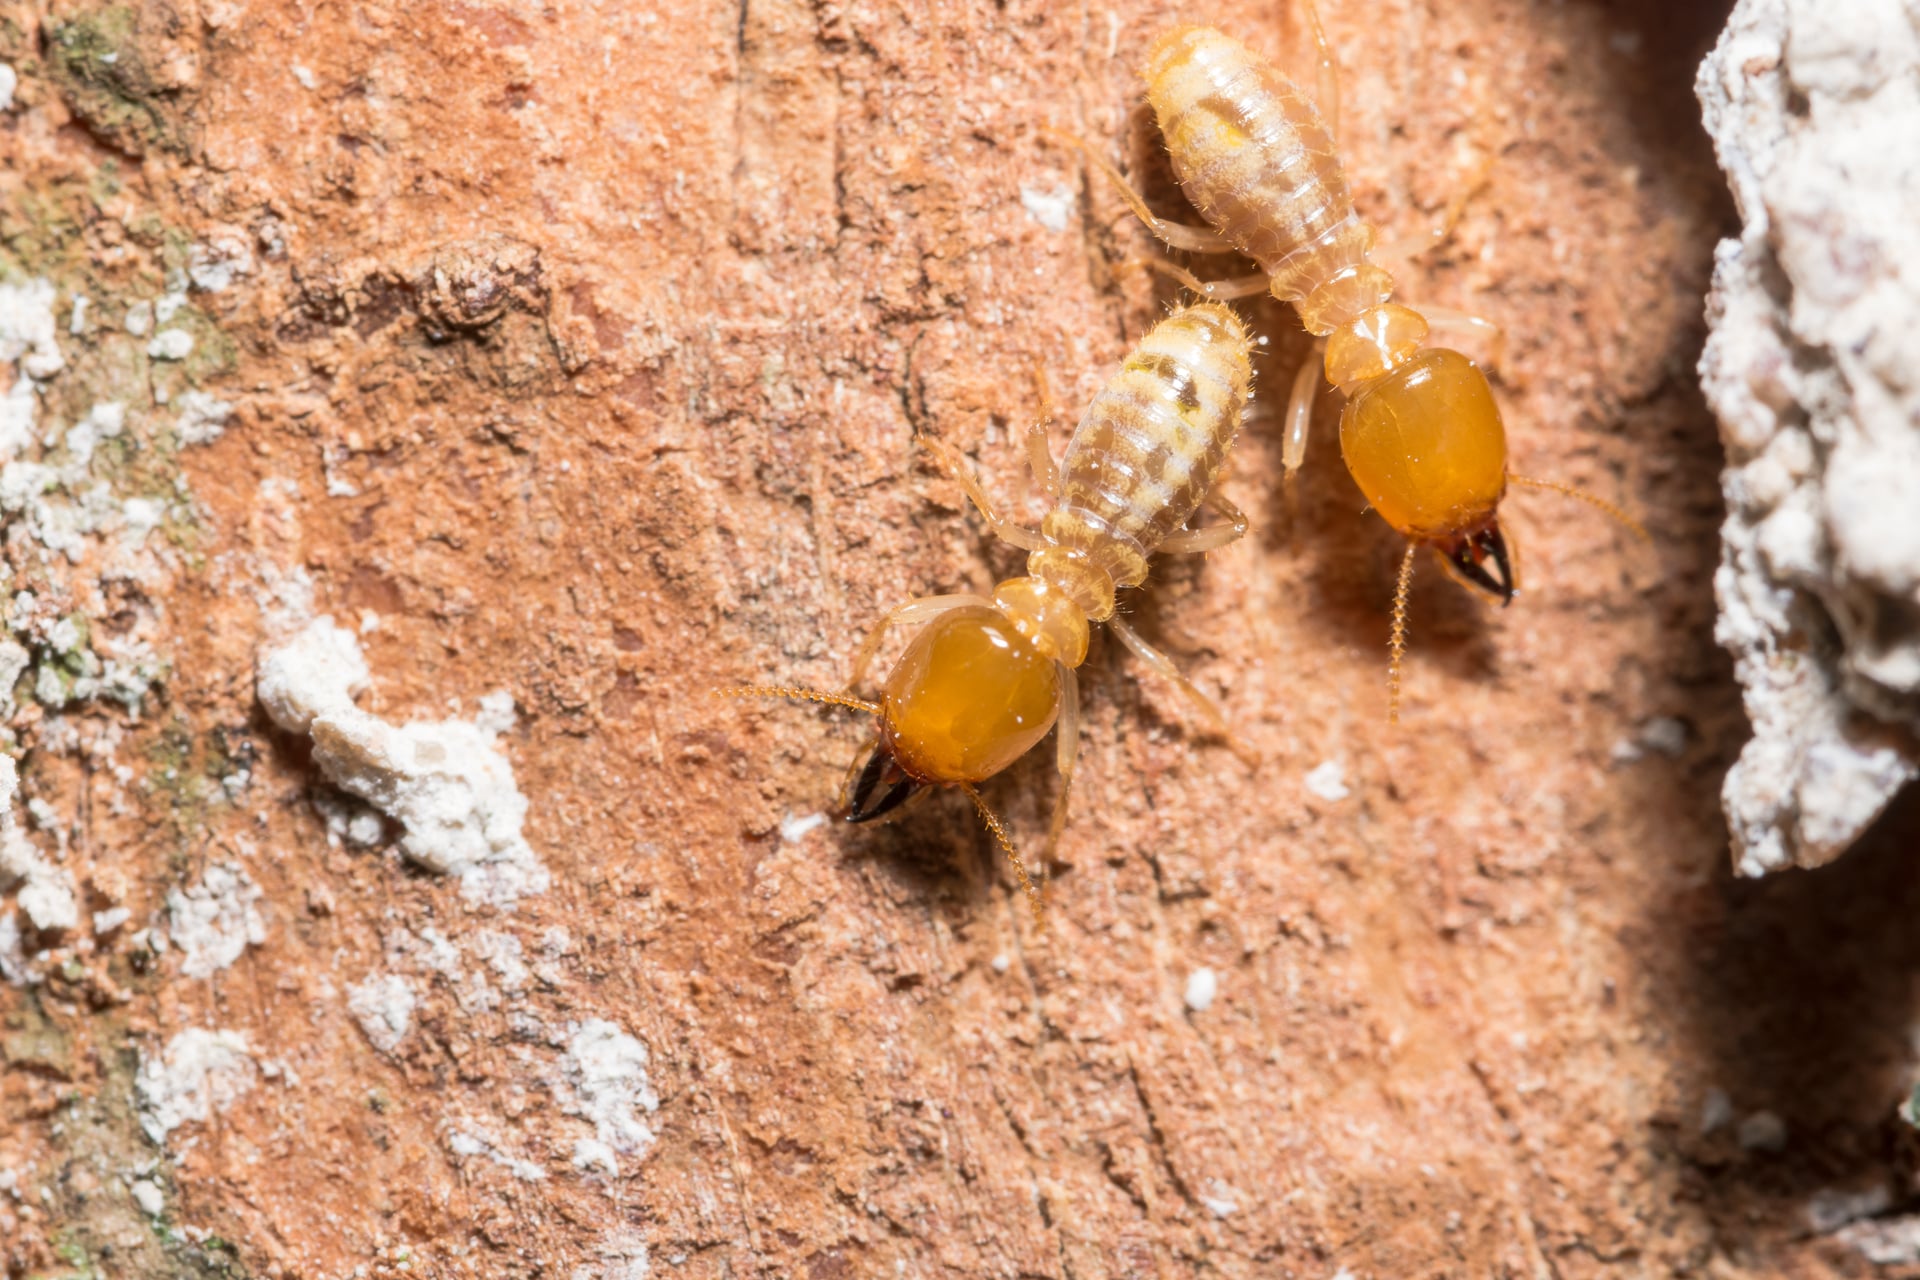 Termite Control in New Brunswick NJ